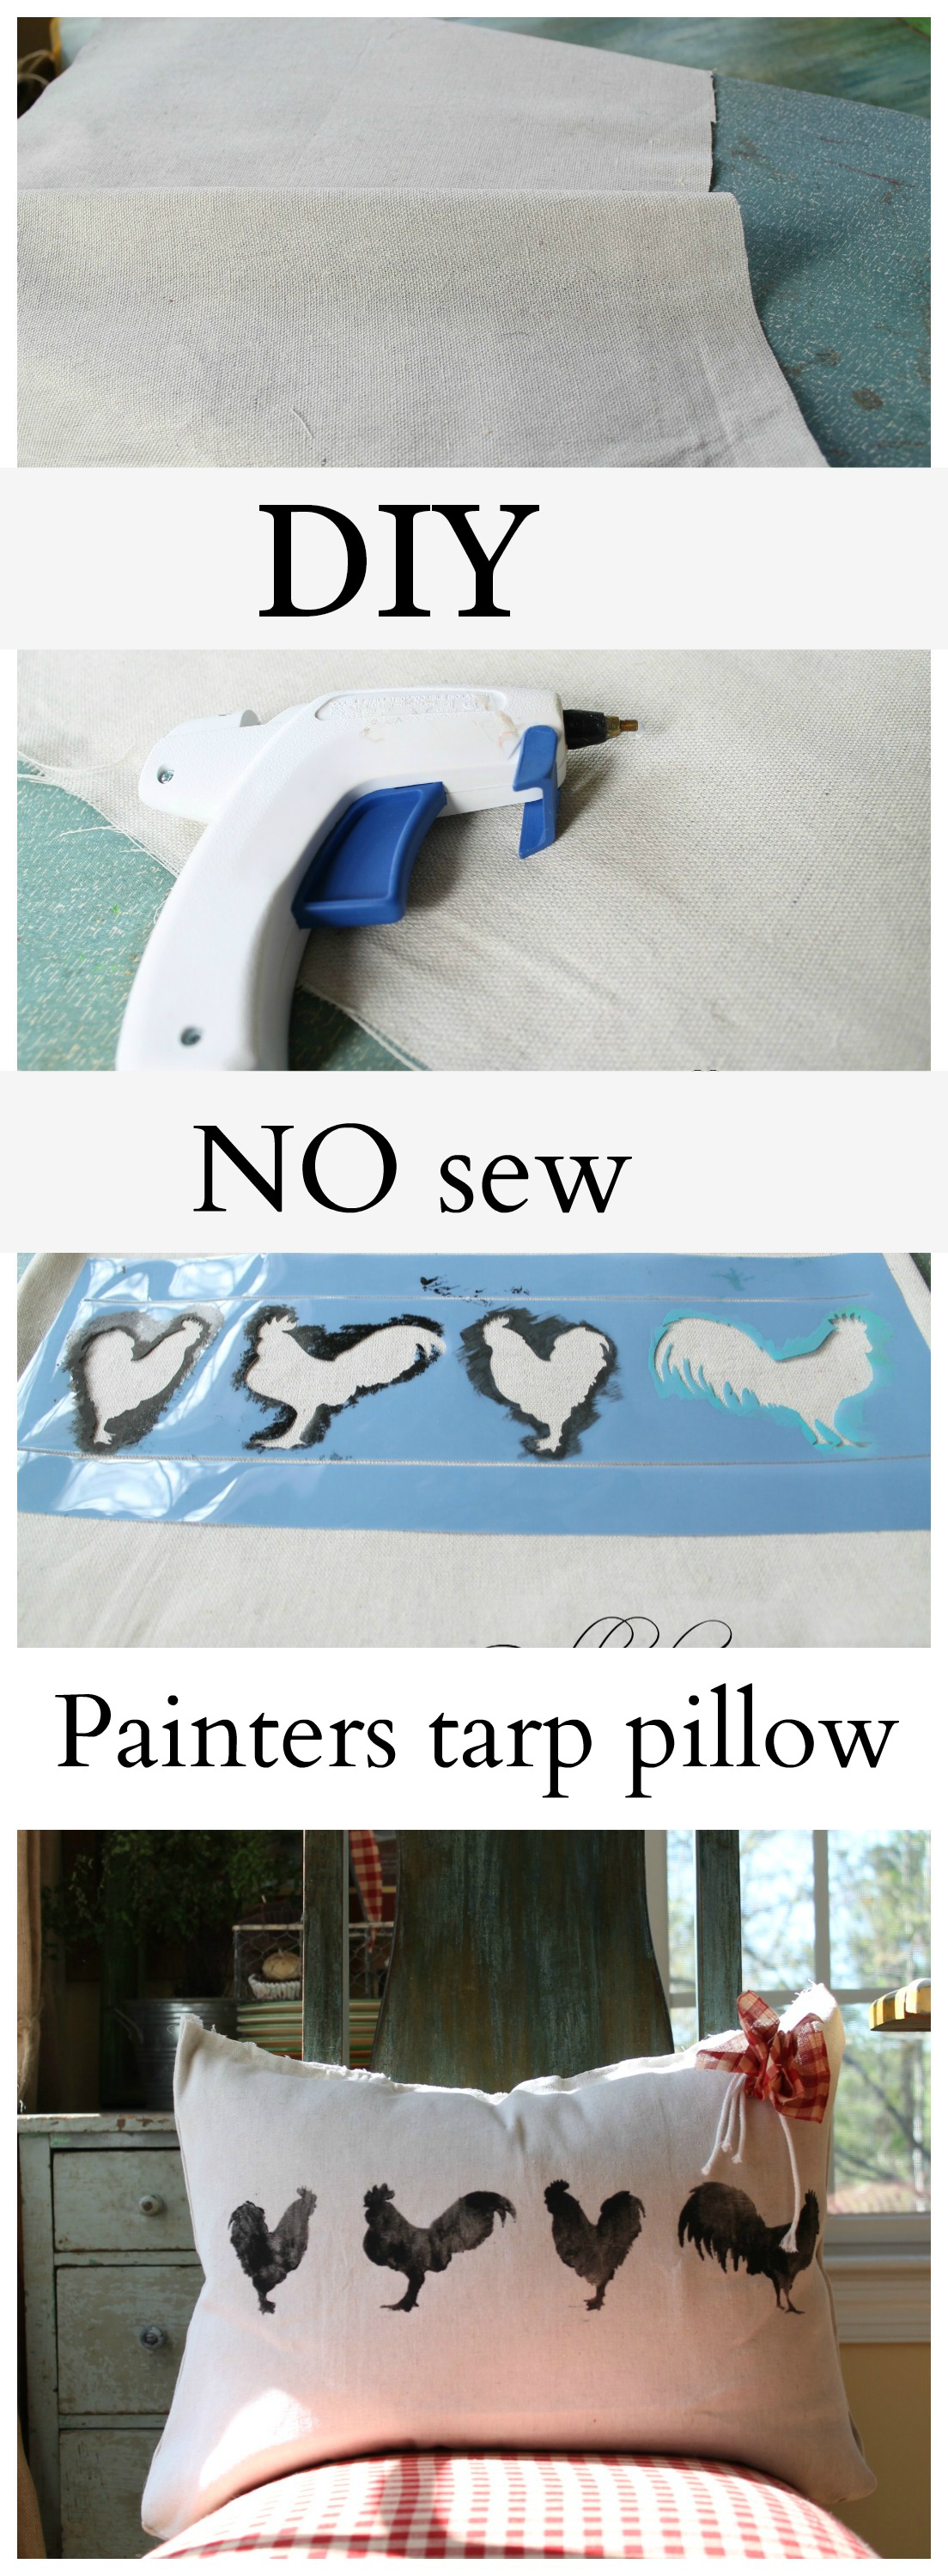 diy no sew painters tarp pillow